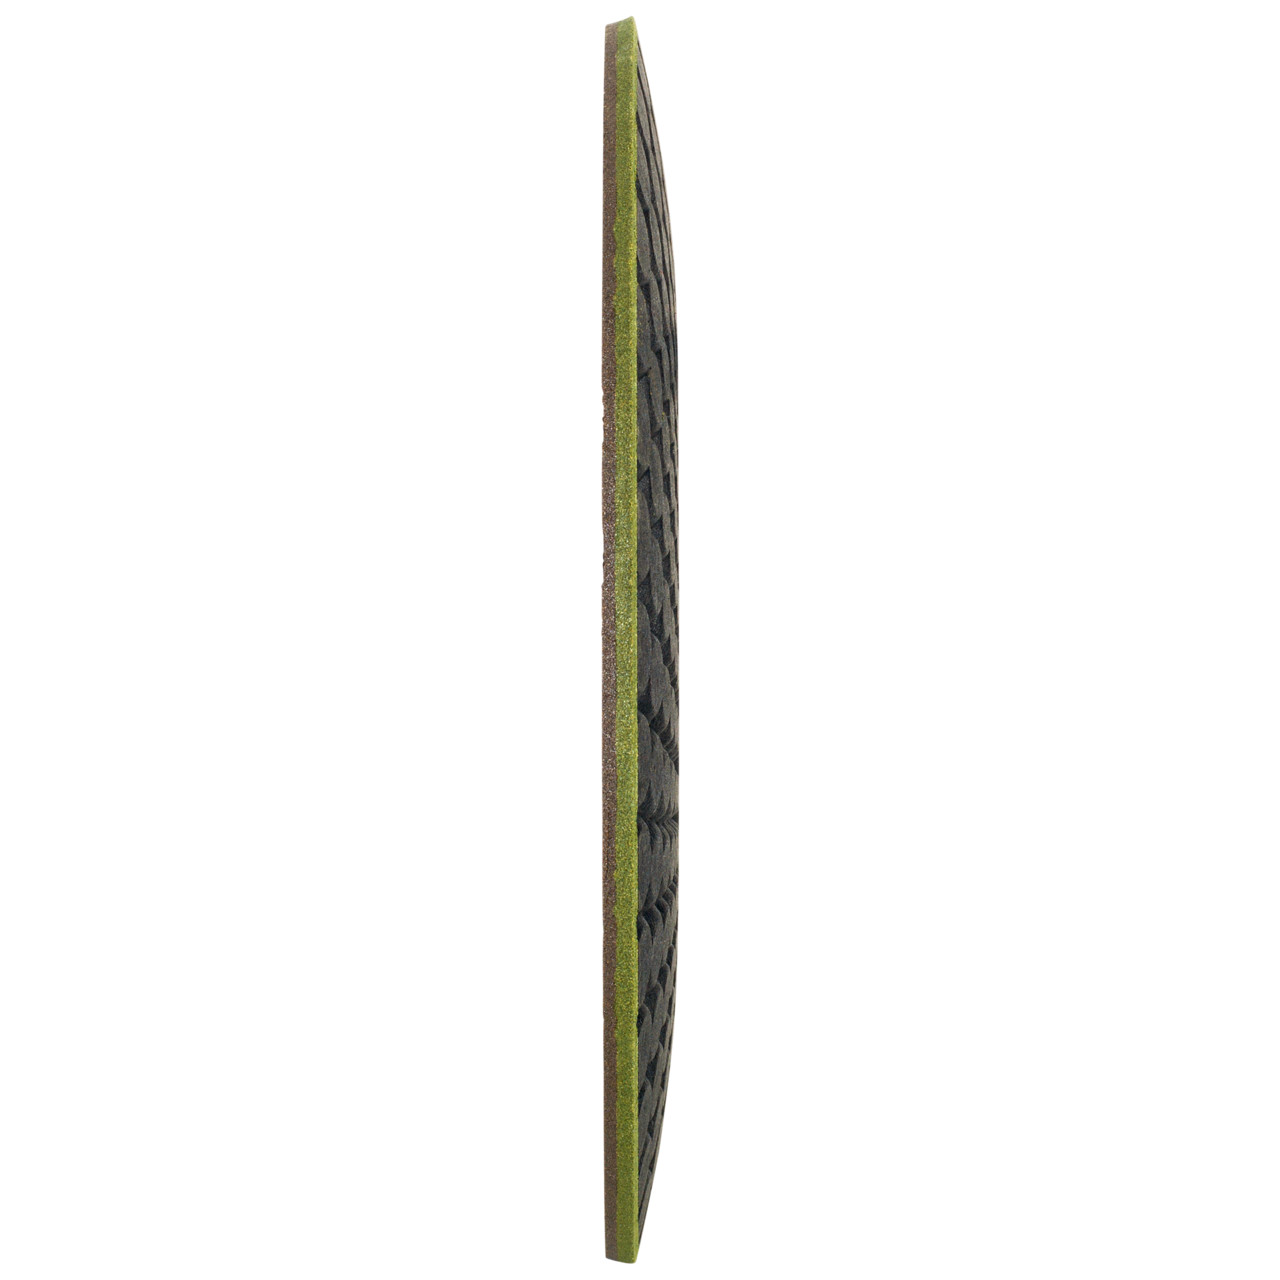 TYROLIT RONDELLER DxH 115x22.23 For stone, shape: 29RON (Rondeller®), Art. 908233